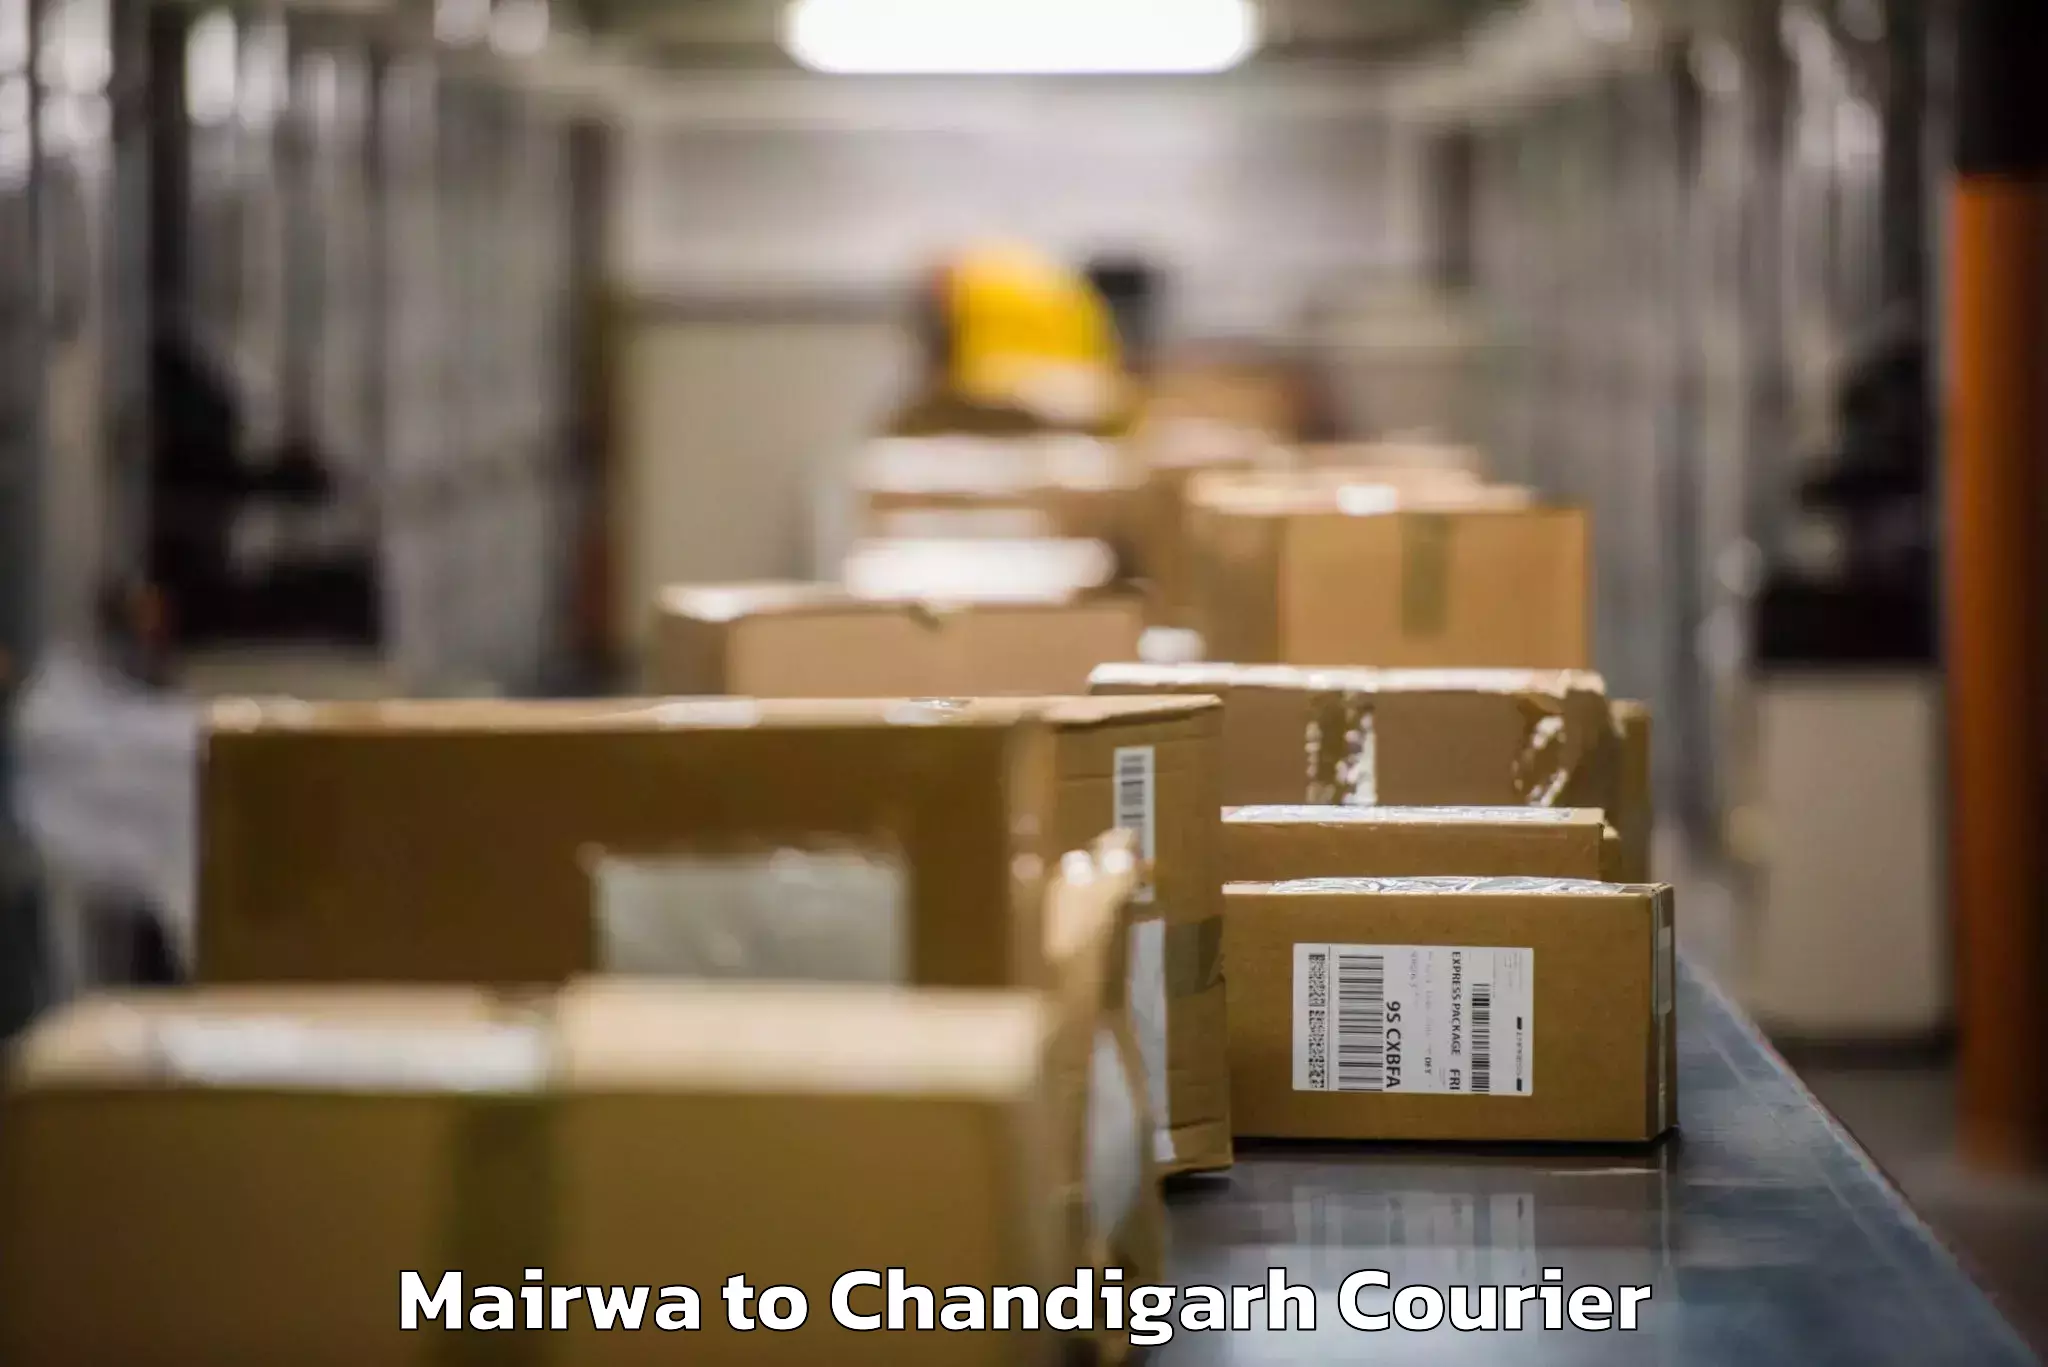 Baggage transport management Mairwa to Chandigarh